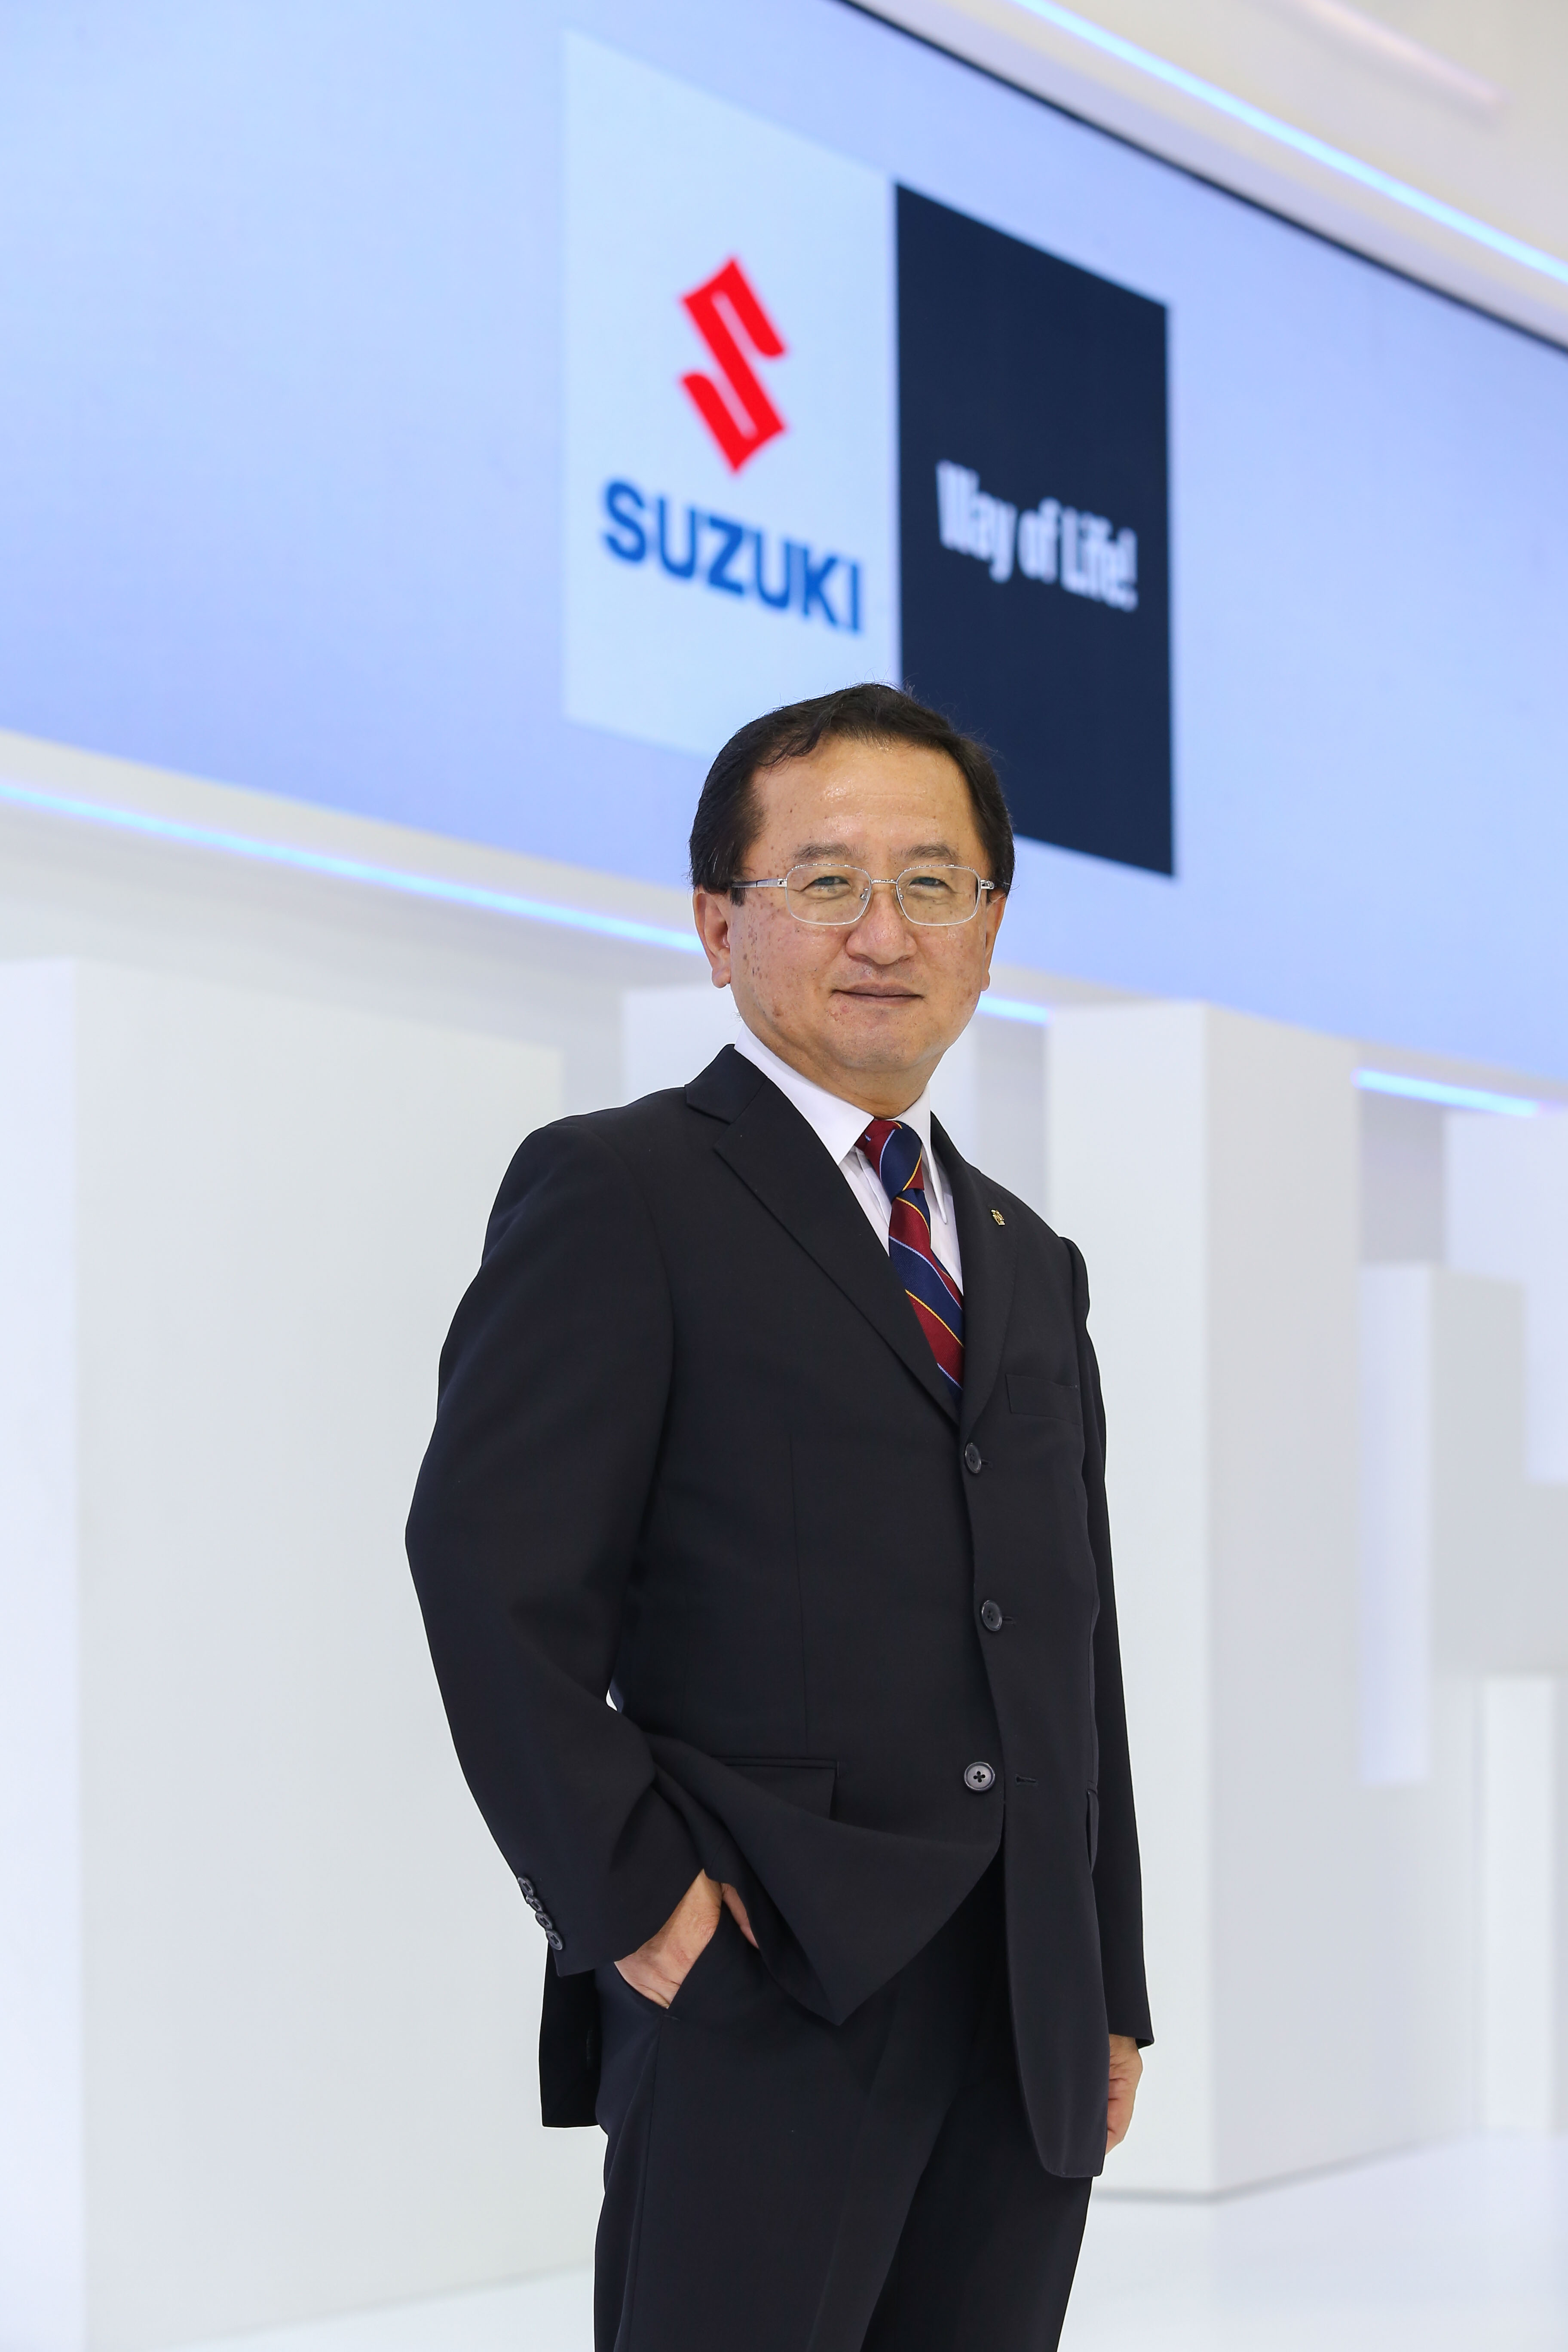 นายมิโนรุ อามาโนะ กรรมการผู้จัดการใหญ่ บริษัท ซูซูกิ มอเตอร์ (ประเทศไทย) จำกัด